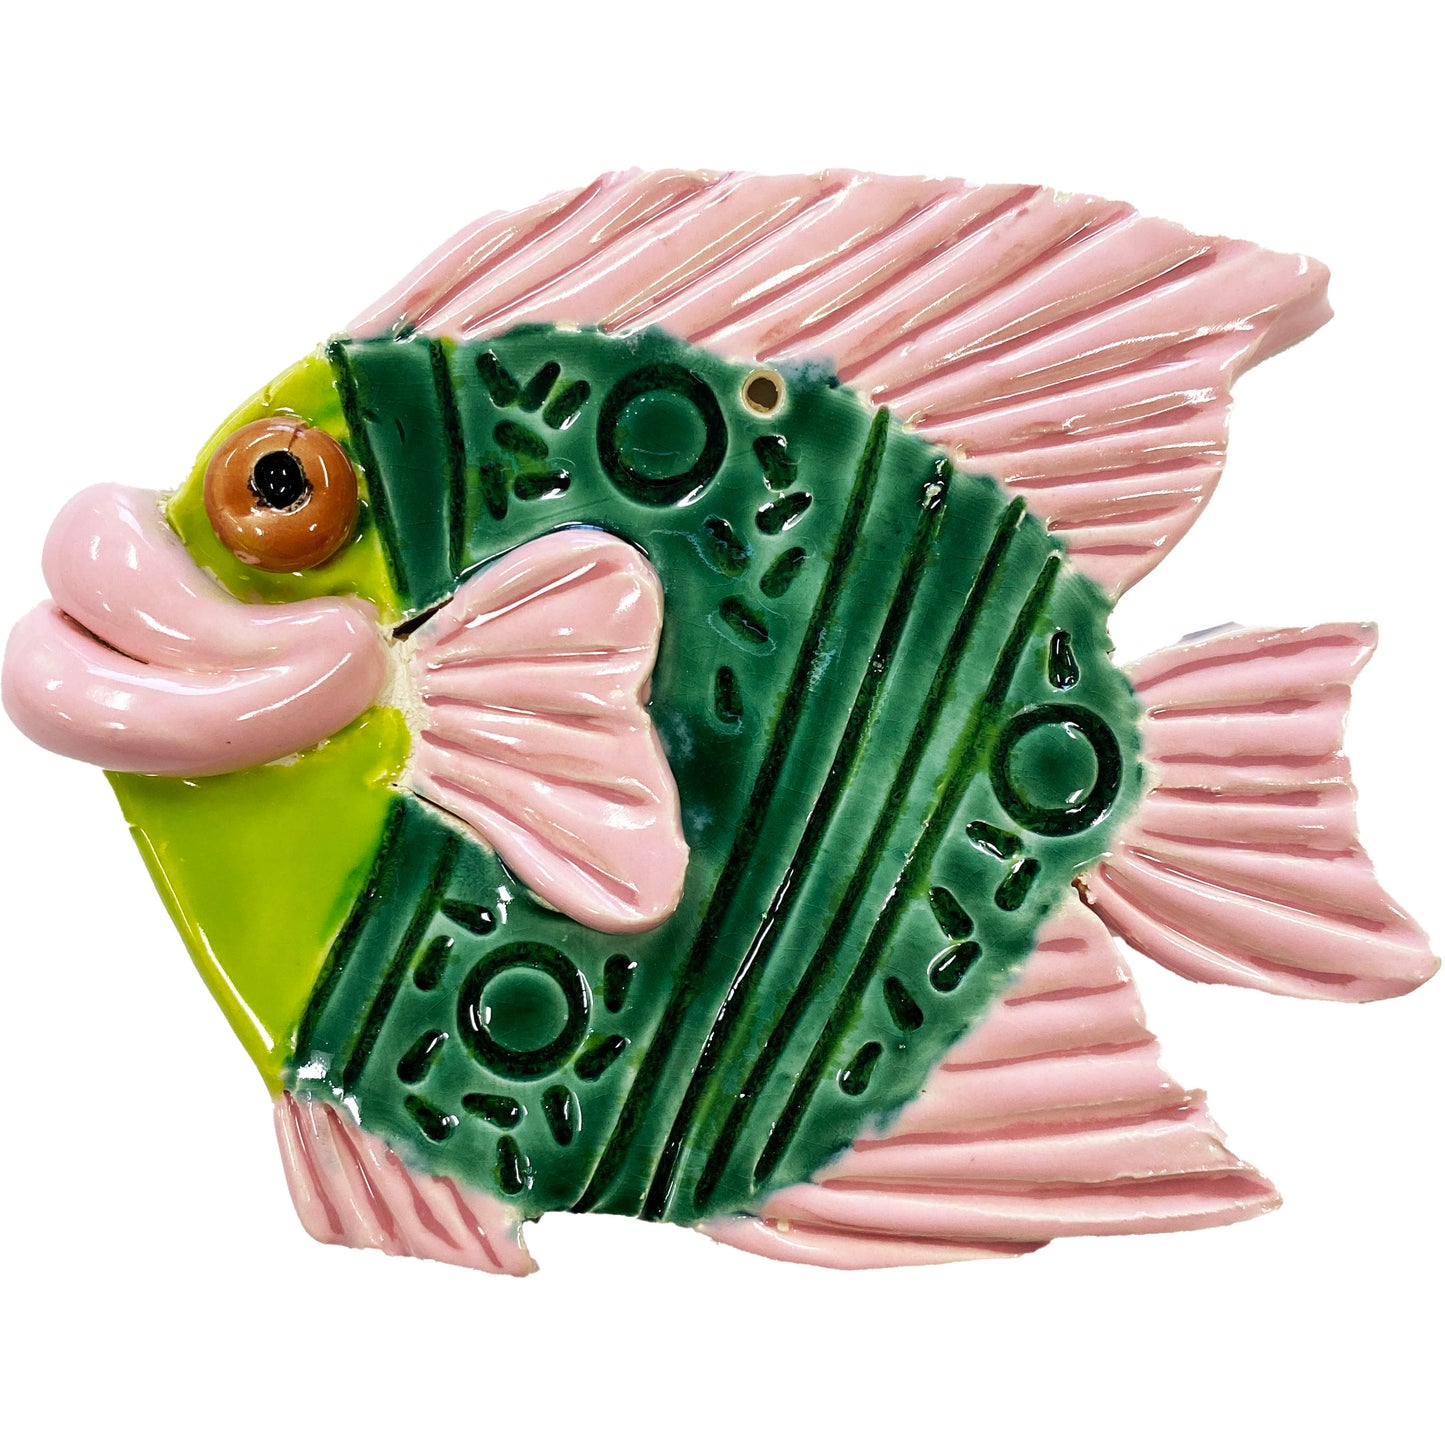 Ceramic Arts Handmade Clay Crafts Fresh Fish Glazed 6-inch x 5-inch by Ryan Imhoff